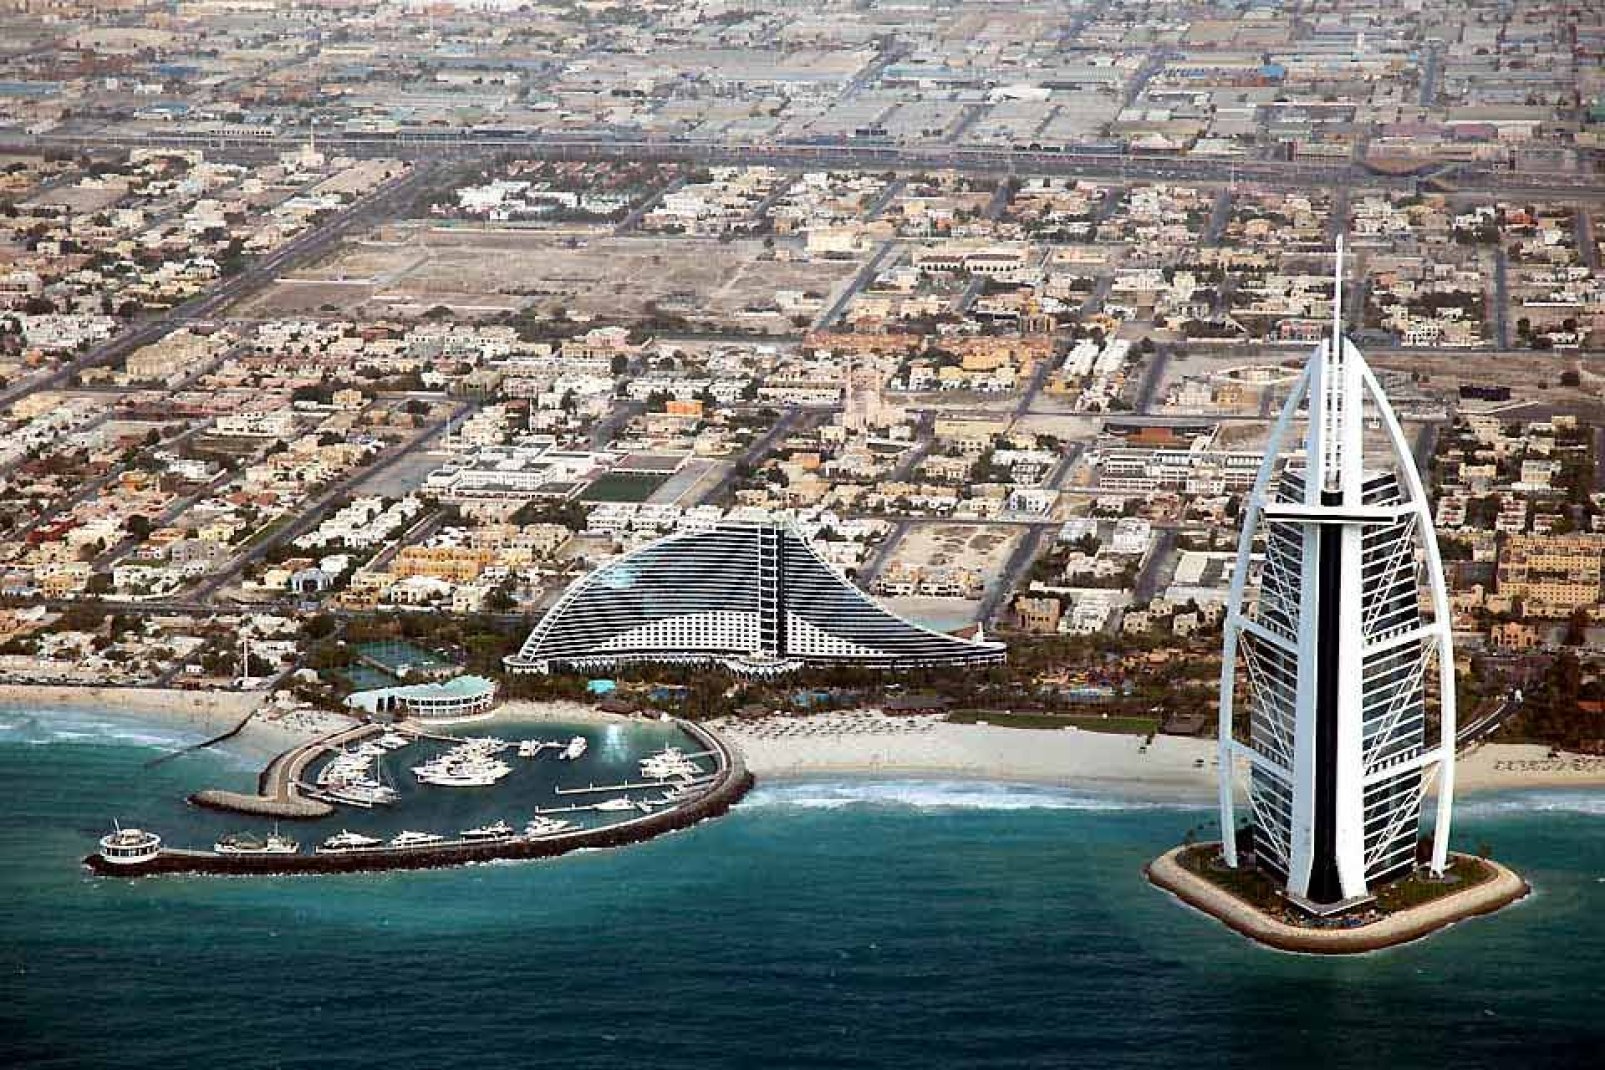 L'ouverture de l'hôtel Burj al-Arab, le plus haut du monde avec 321m, en 1999 a lancé les ambitions touristiques de la ville.